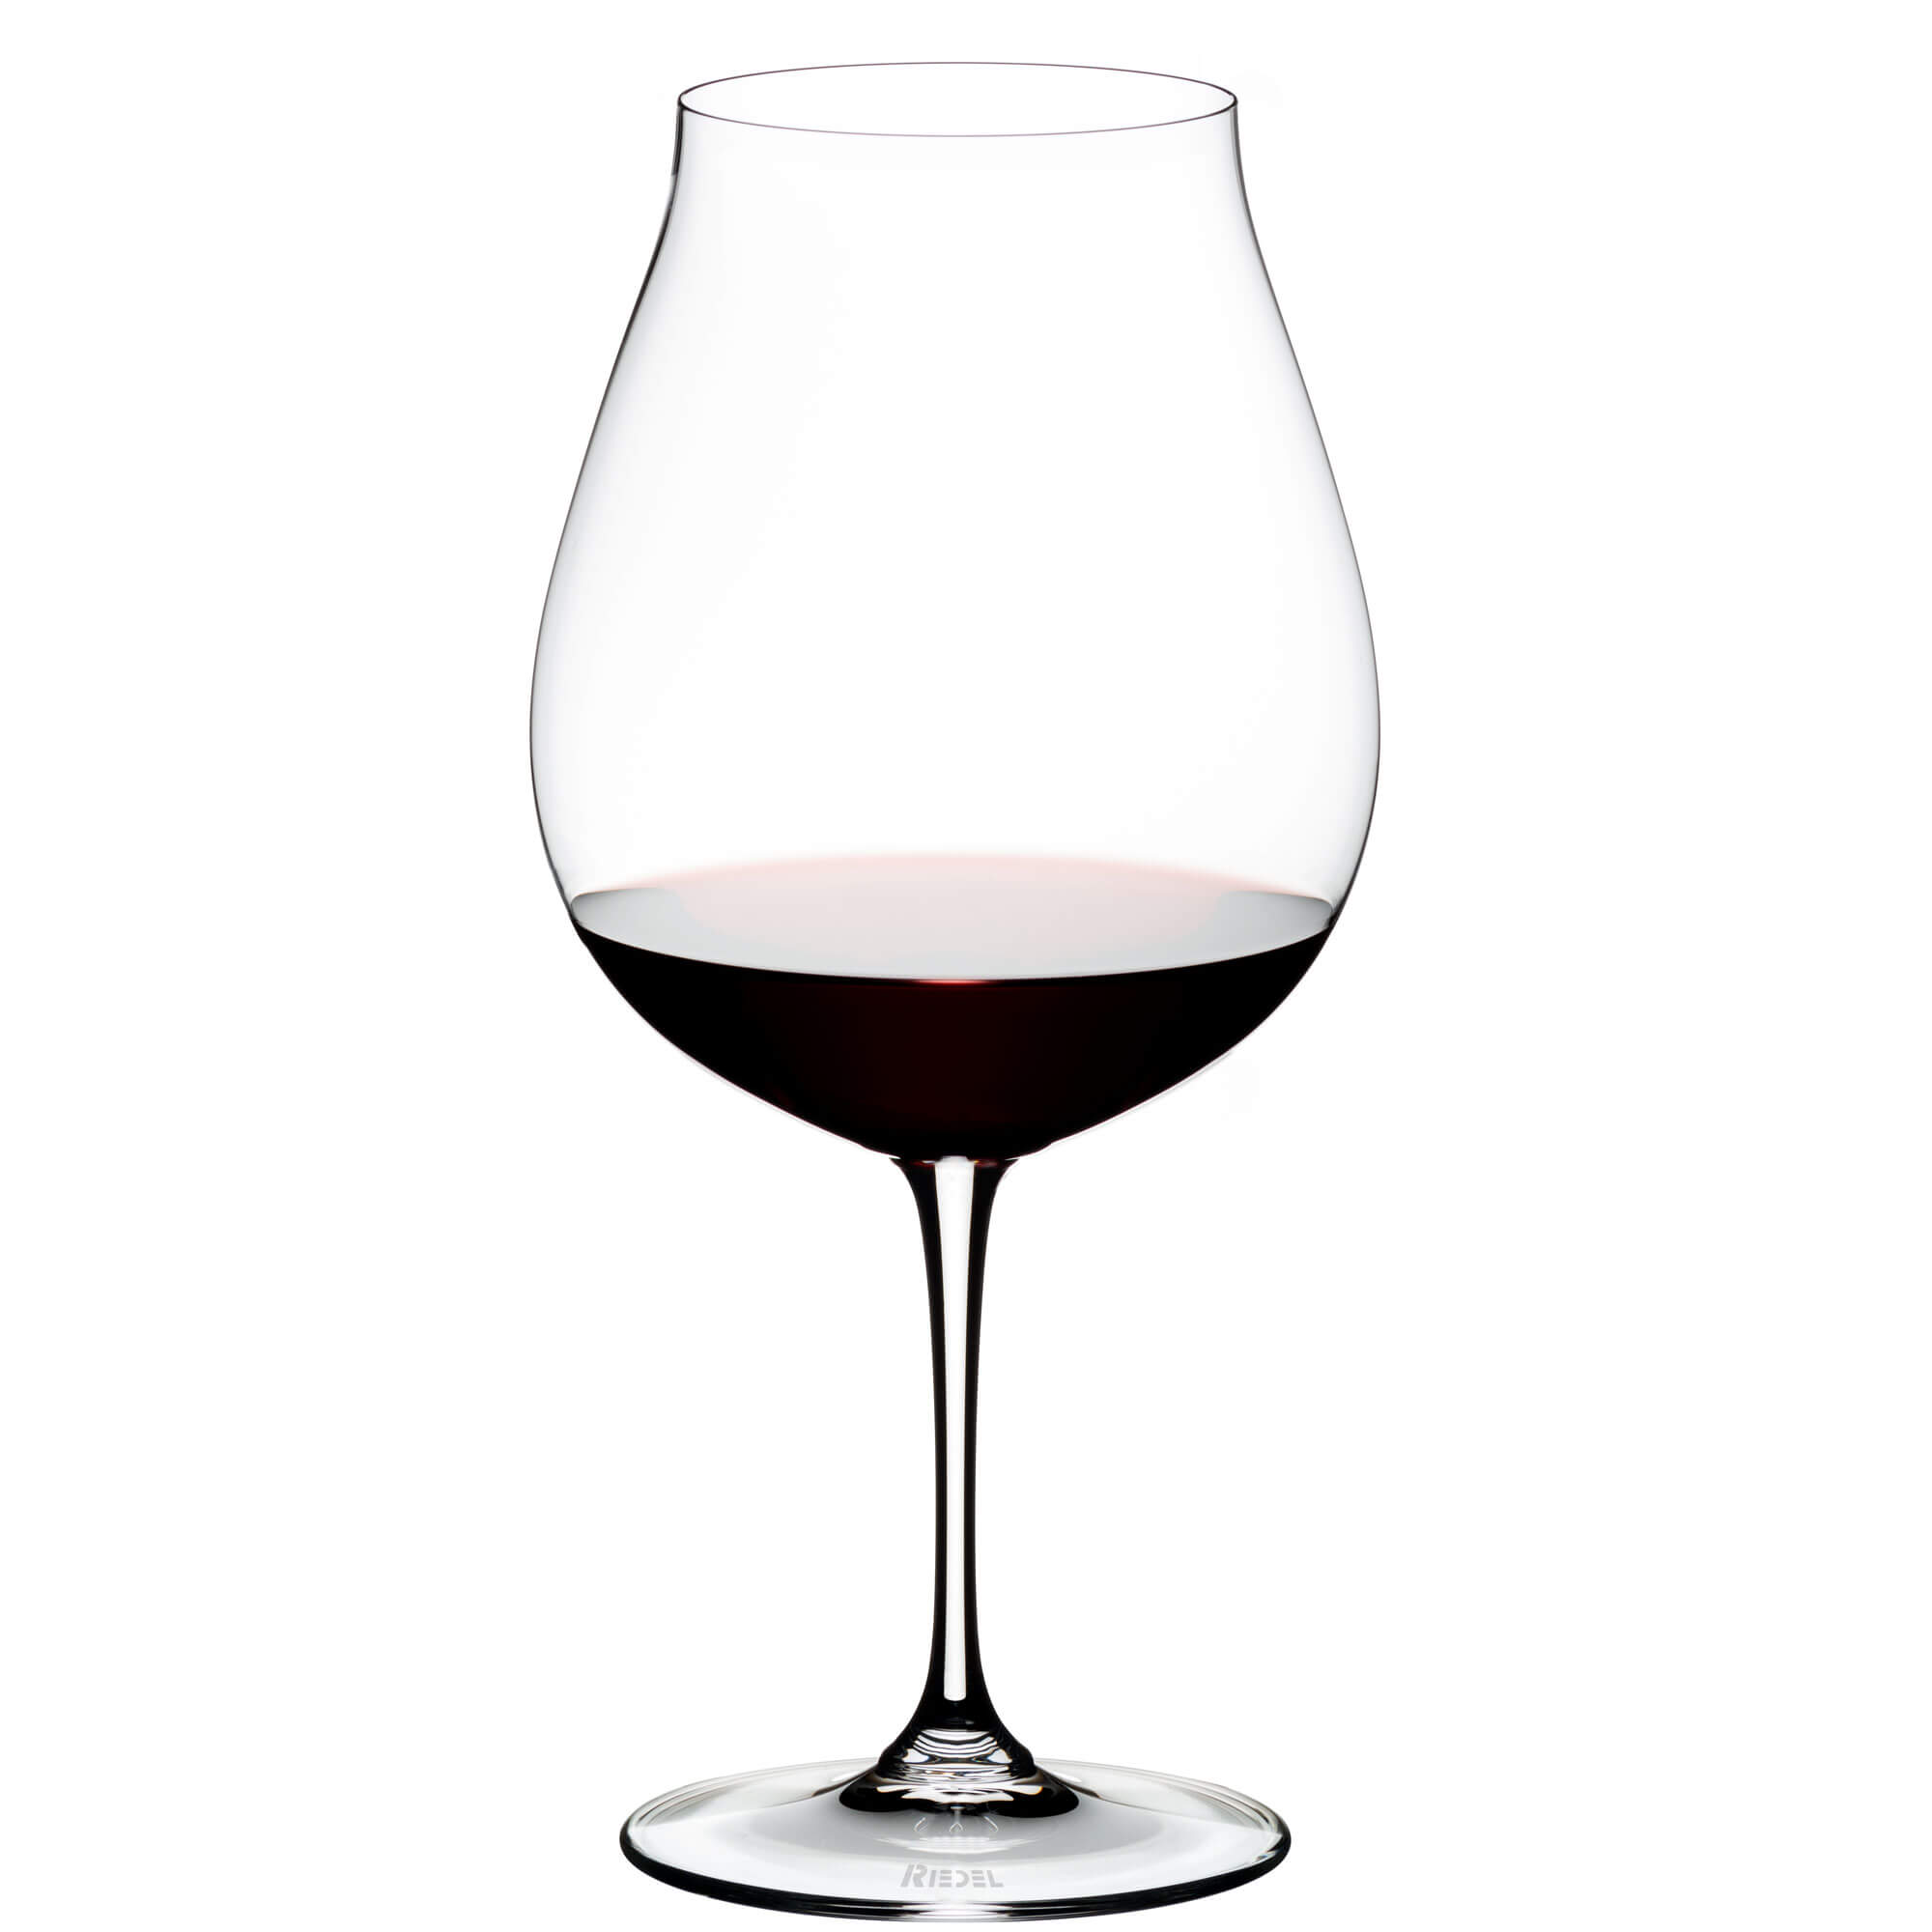 New World Pinot Noir glass Vinum, Riedel - 800ml (2 pcs.)